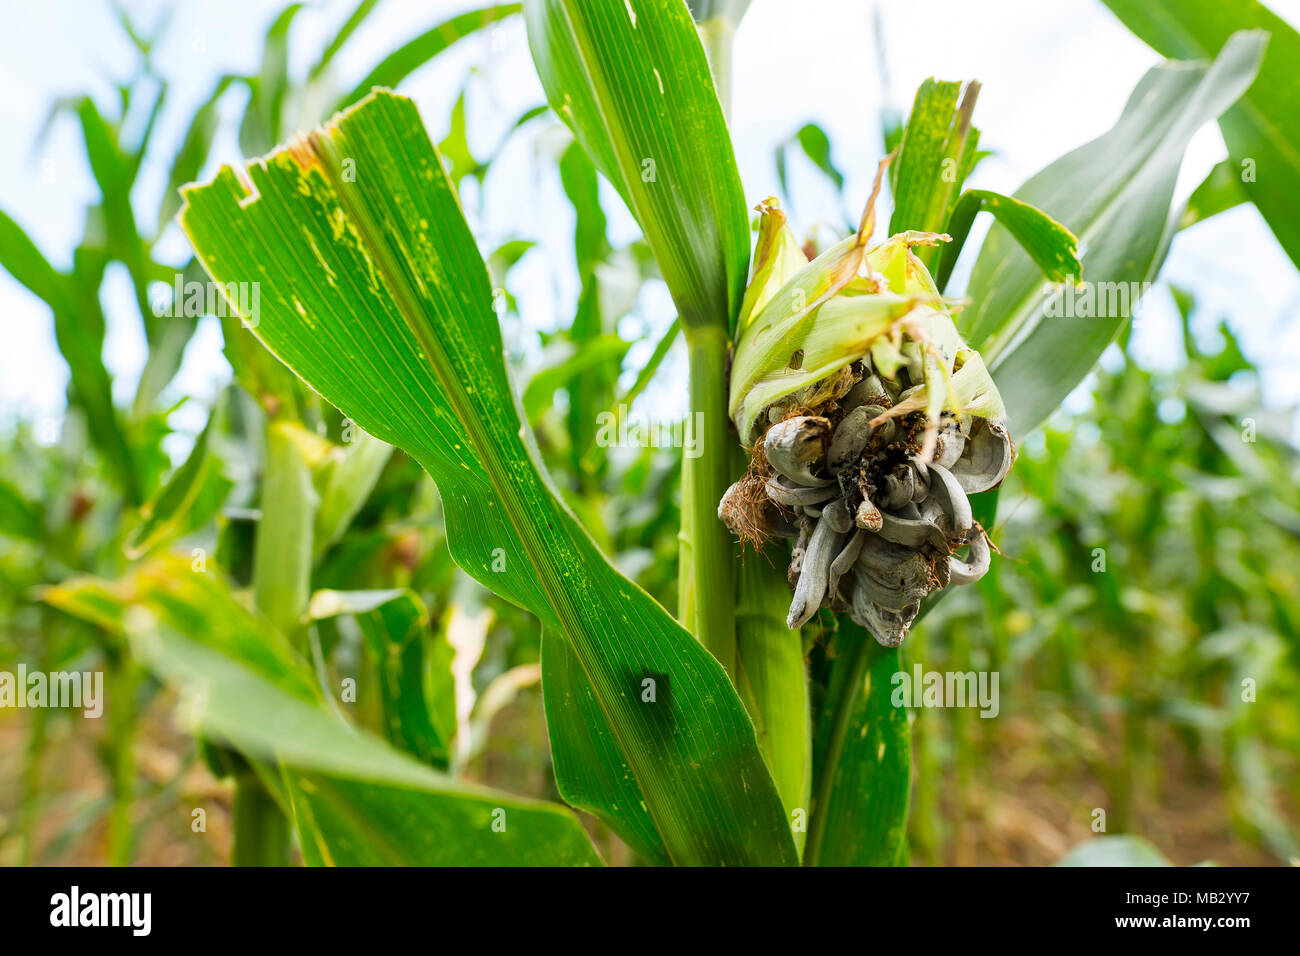 Huitlacoche-Corn smut, Pilz, mexikanische Trüffel in den grünen Bereich. Corn smut ist eine Krankheit, die durch den pathogenen Pilzes Ustilago maydis, der dazu führte, dass Stockfoto